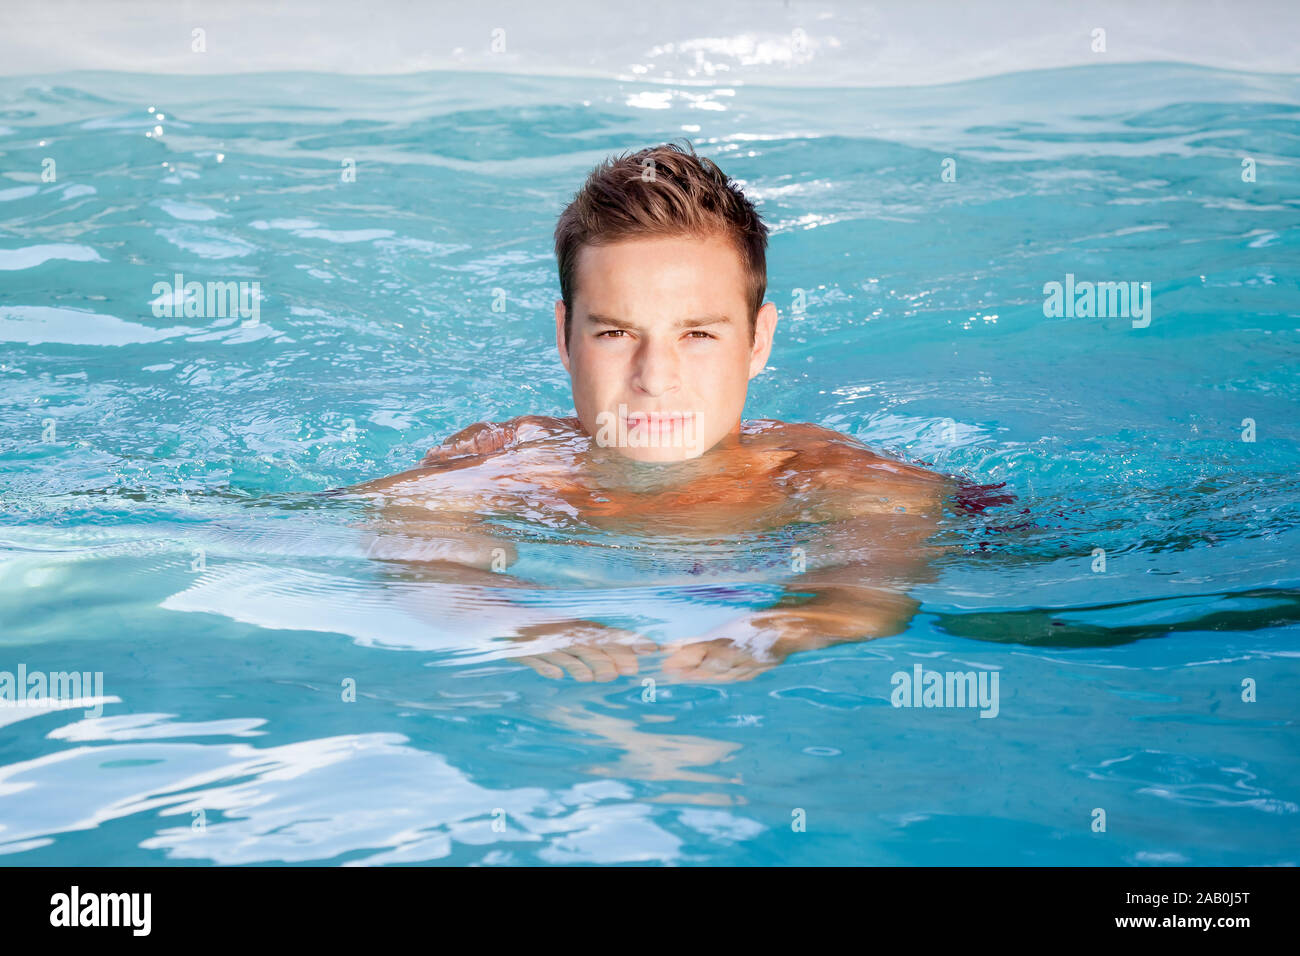 Ein junger Mann, der im Schwimmbecken schwimmt Foto Stock